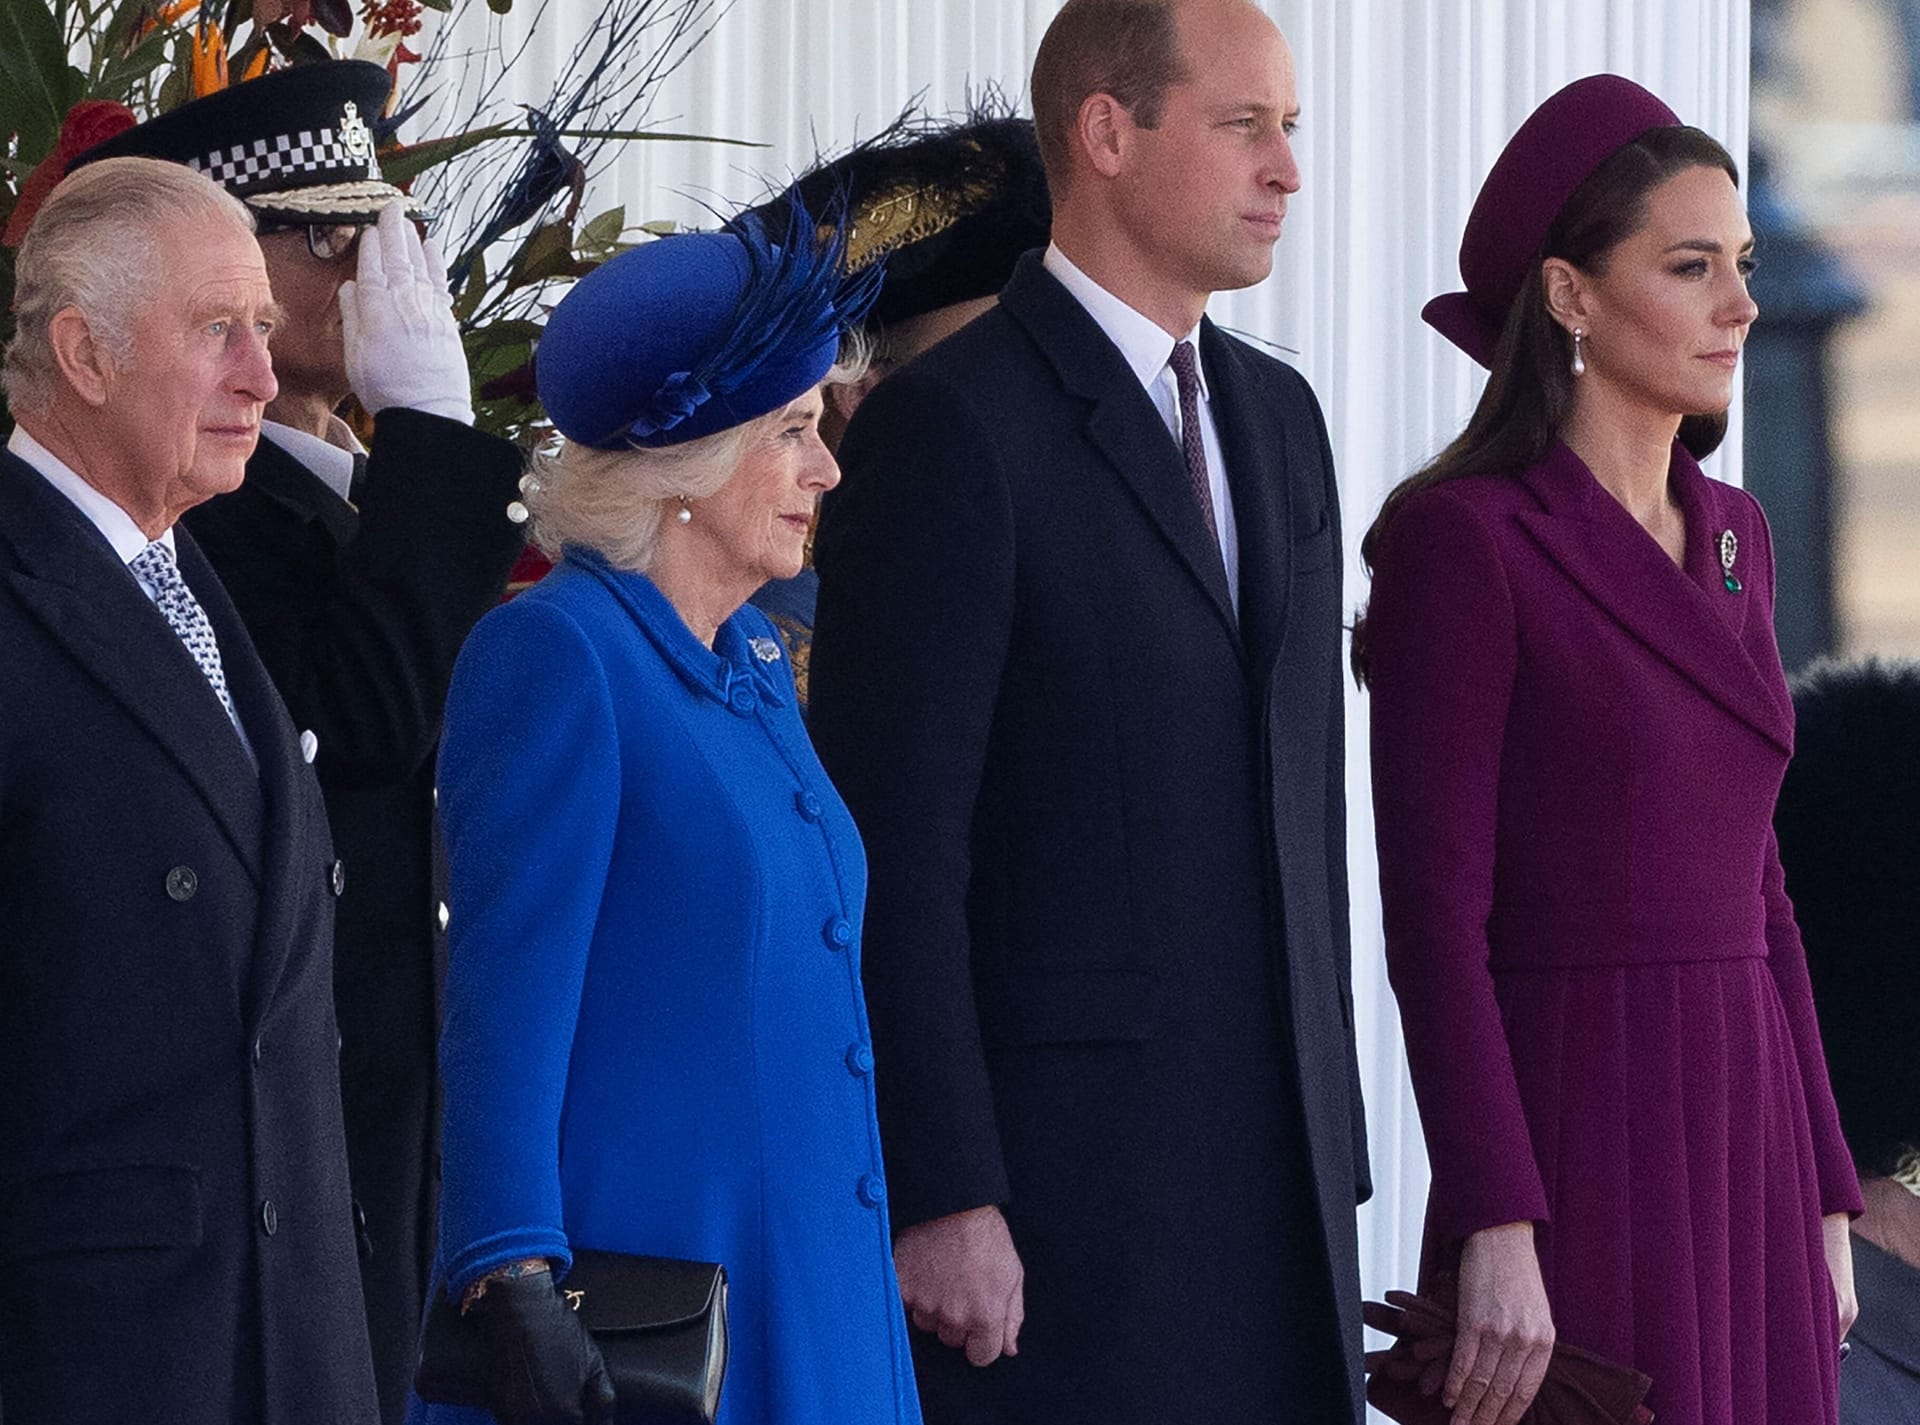 König Charles III., Königsgemahlin Camilla, Prinz William und dessen Ehefrau Kate: Nicht alle Royals werden sich in diesem Jahr beim Ostergottesdienst zeigen.